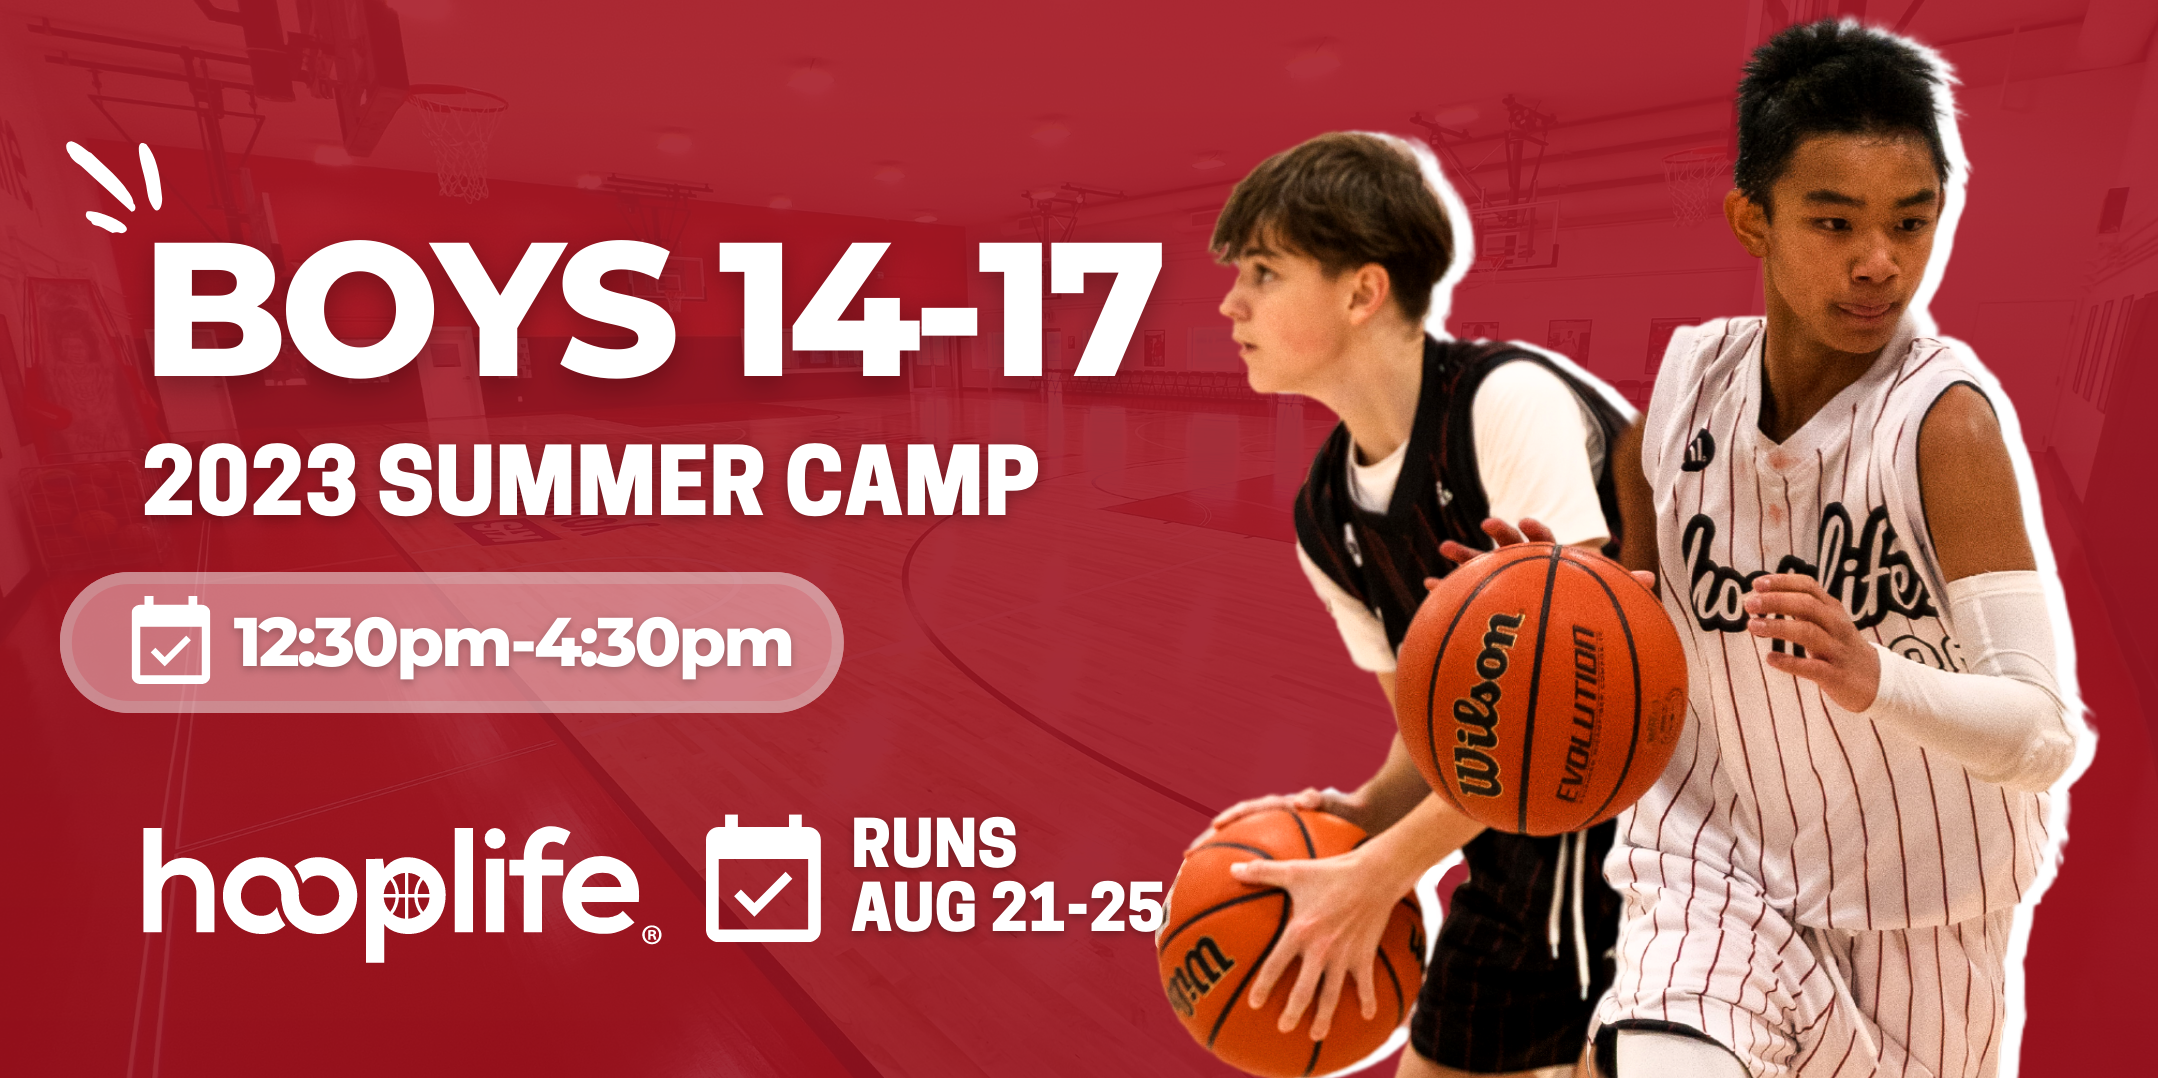 Boys 14-17 Summer Camp | Aug 21-25